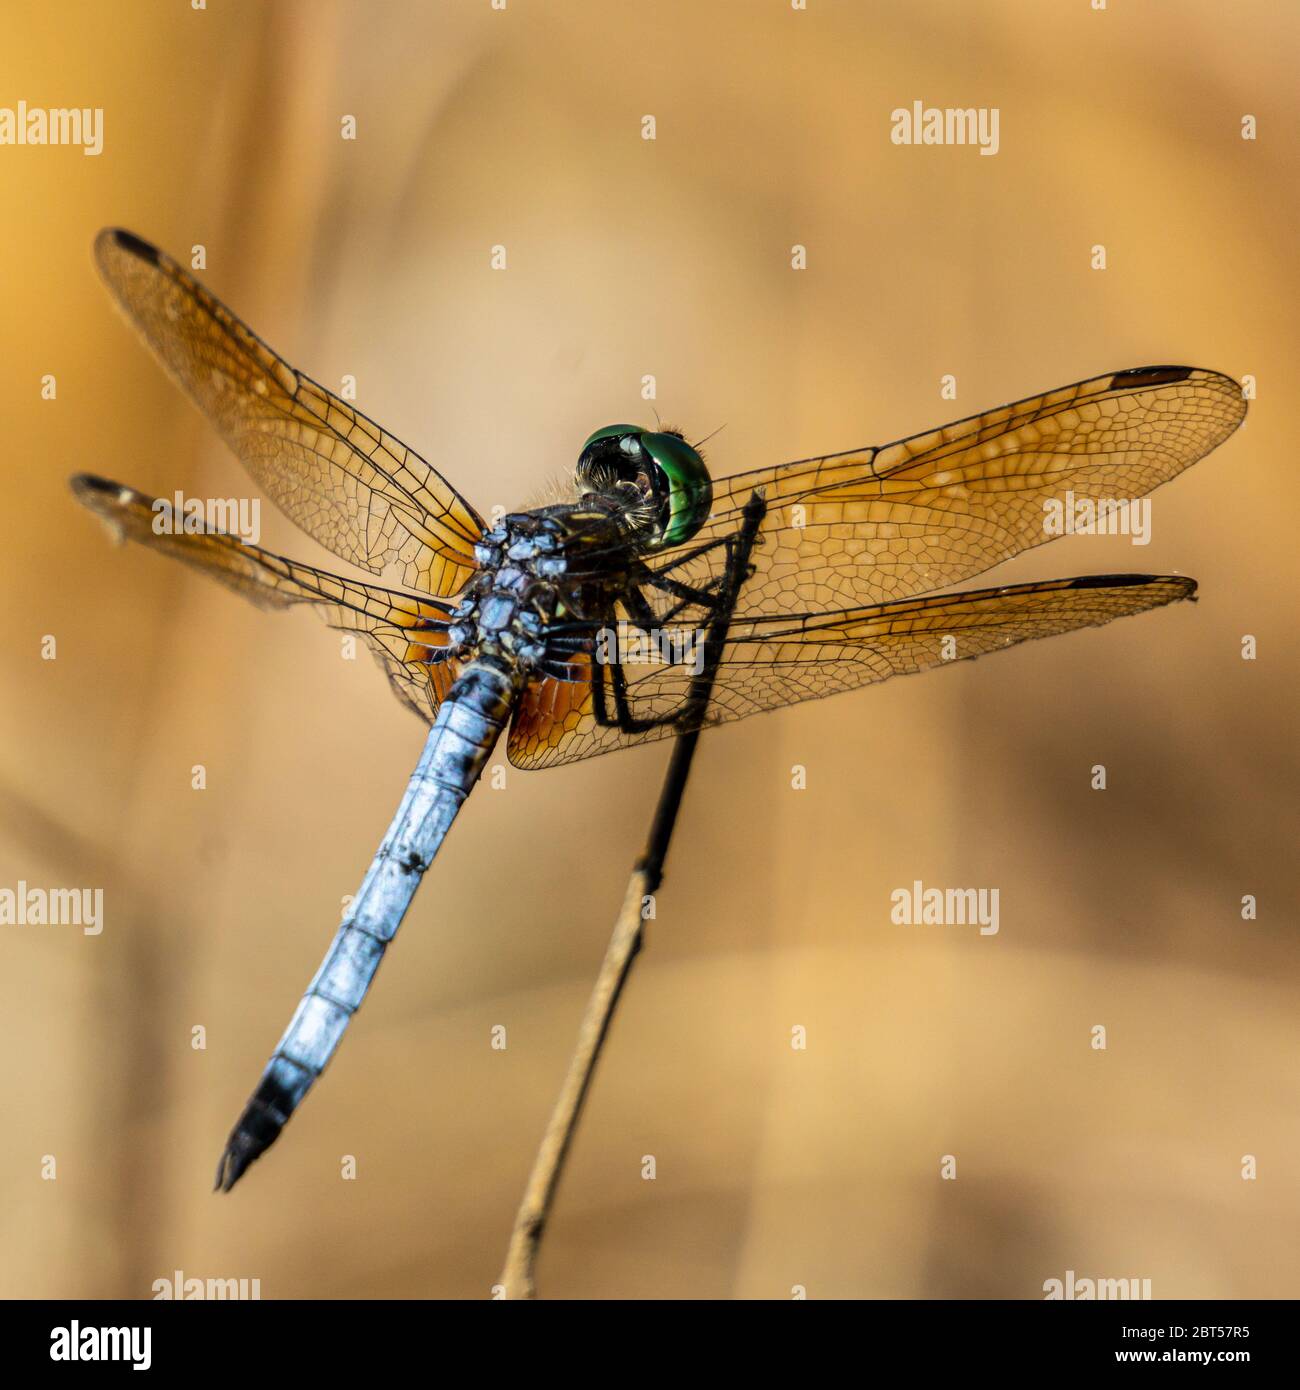 Dragonfly bleu mâle (Pachydipax longipennis) debout sur un bâton, Pine Glades Natural Area, Jupiter, Palm Beach County, Floride, États-Unis Banque D'Images